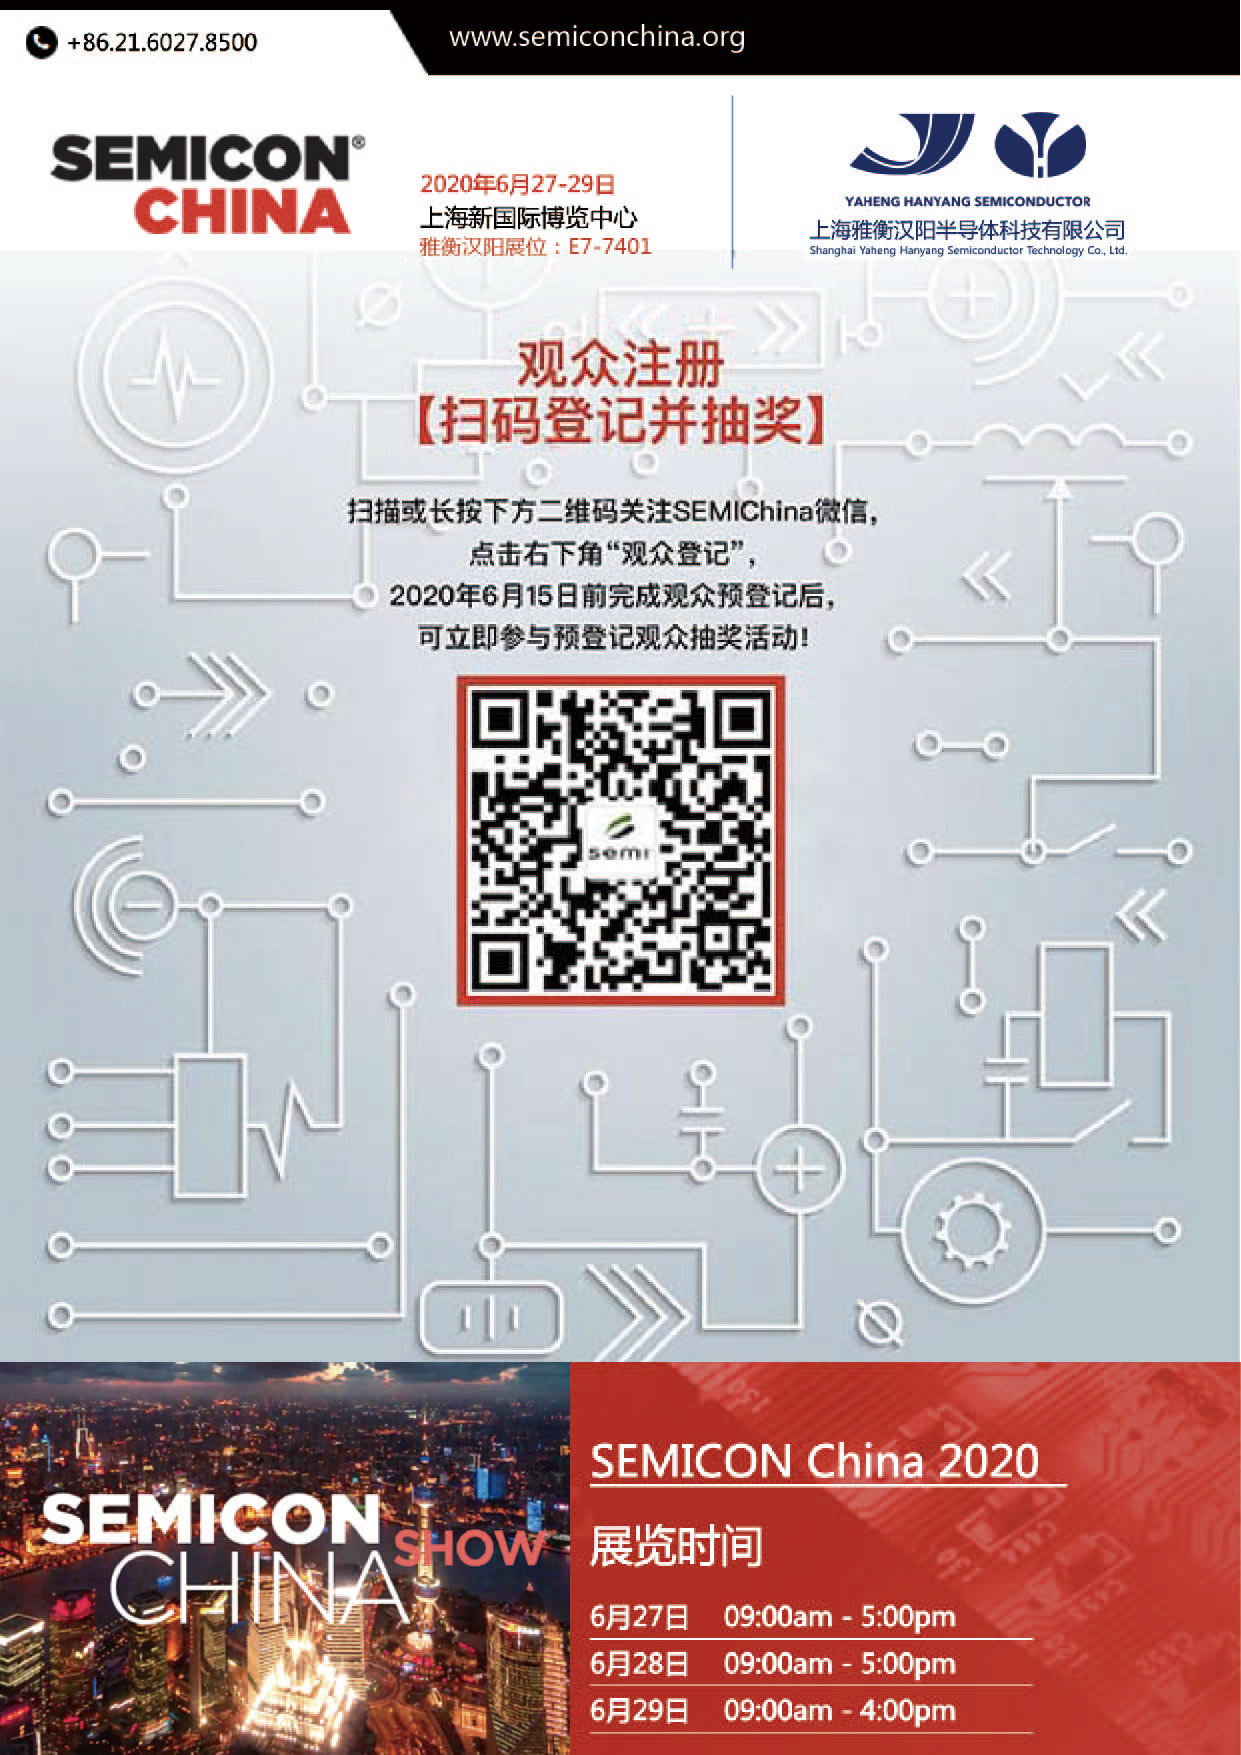 雅衡汉阳邀您参观SEMICON China 2020